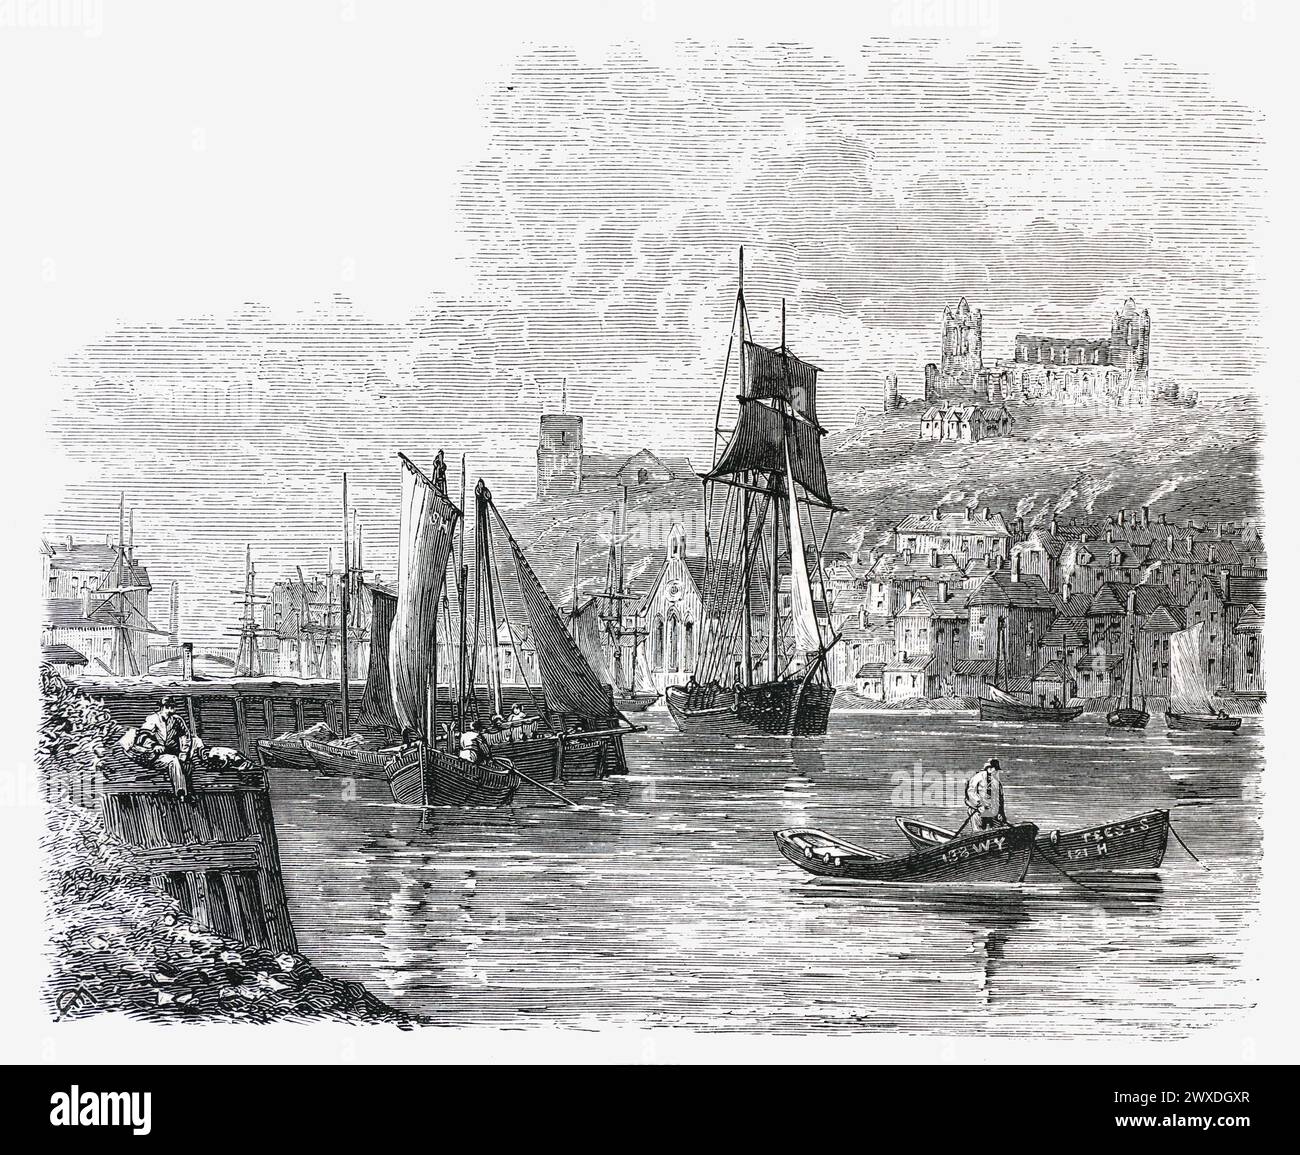 Whitby Harbour, XIXe siècle ; illustration en noir et blanc de « notre propre pays » publiée par Cassell, Petter, Galpin & Co. Fin du XIXe siècle. Banque D'Images